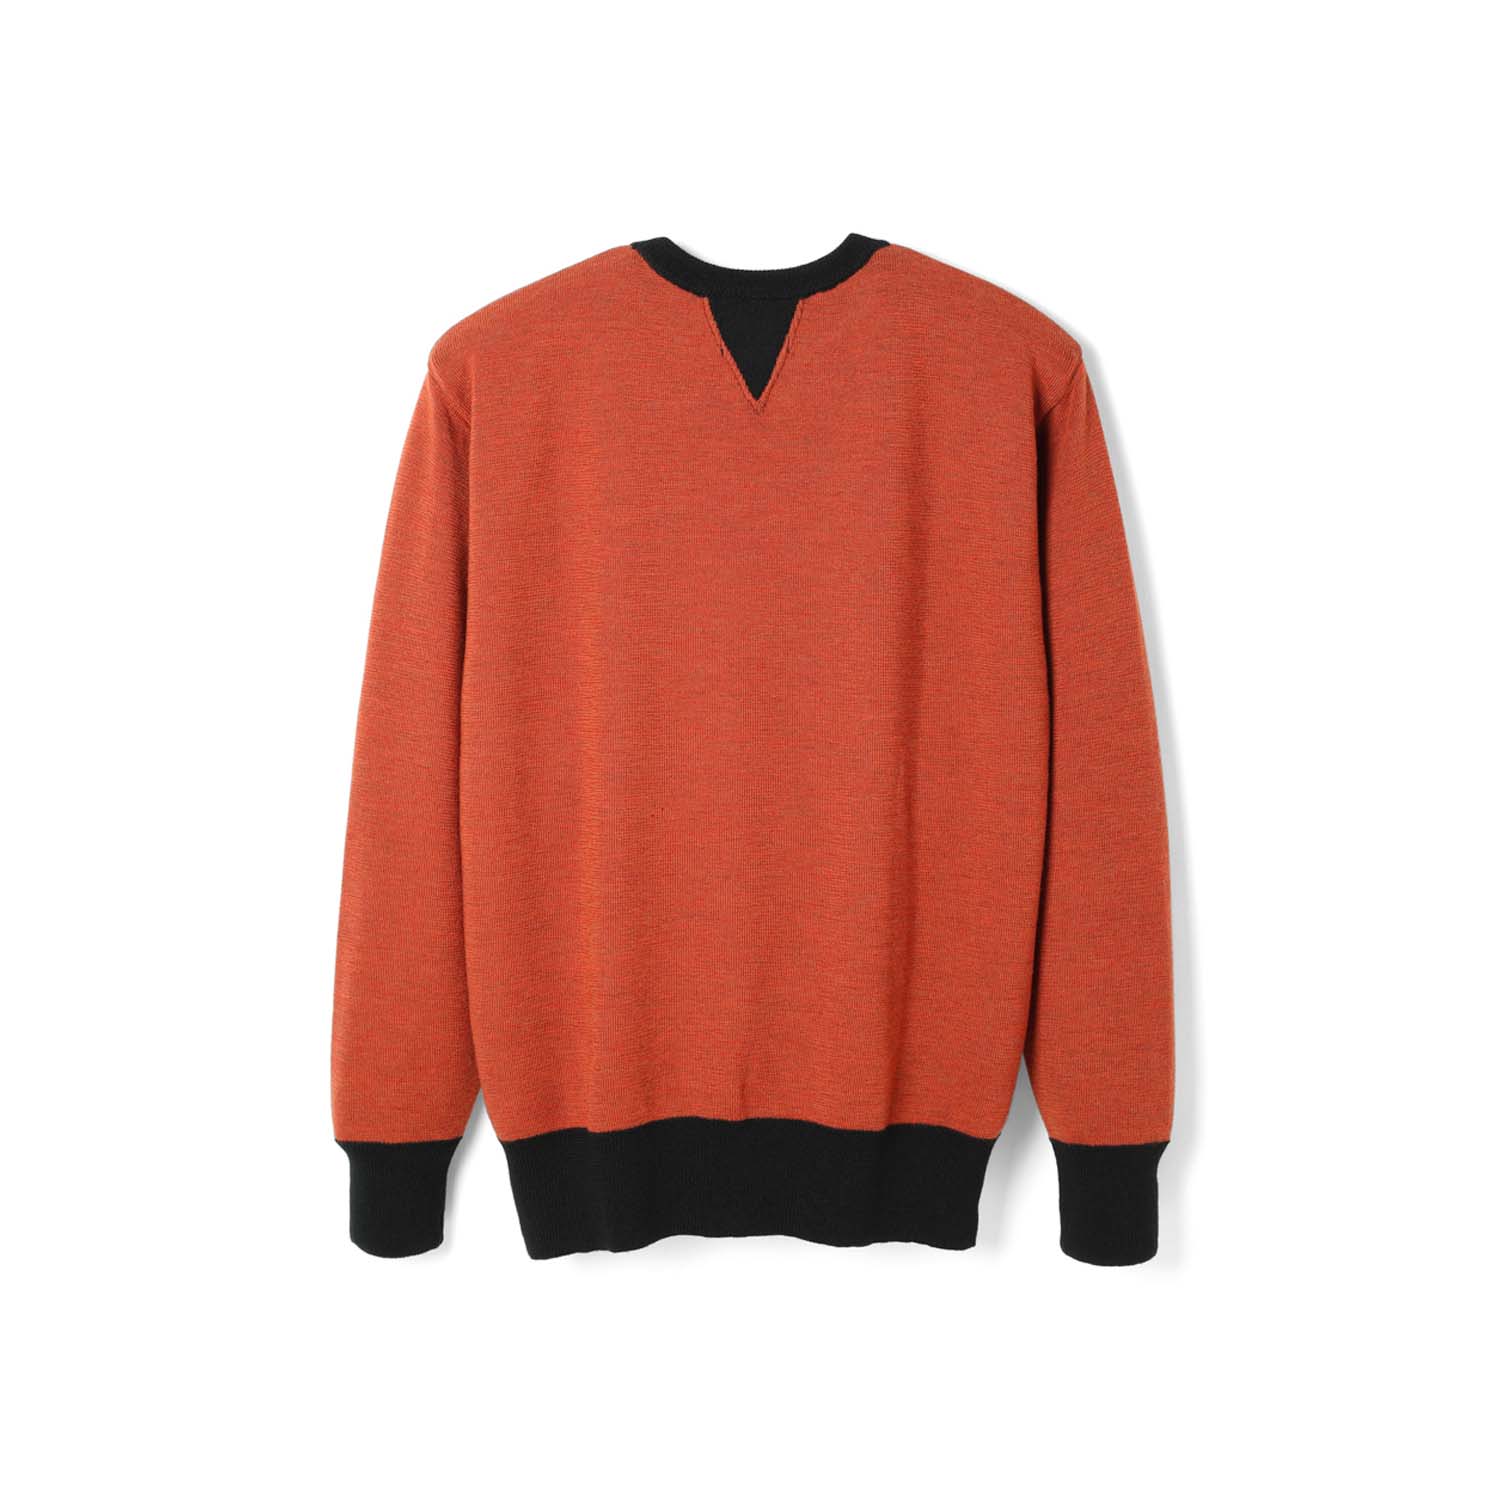 Stevenson Overall Co. V-Gusset Wool Knitted Sweat Shirt Orange